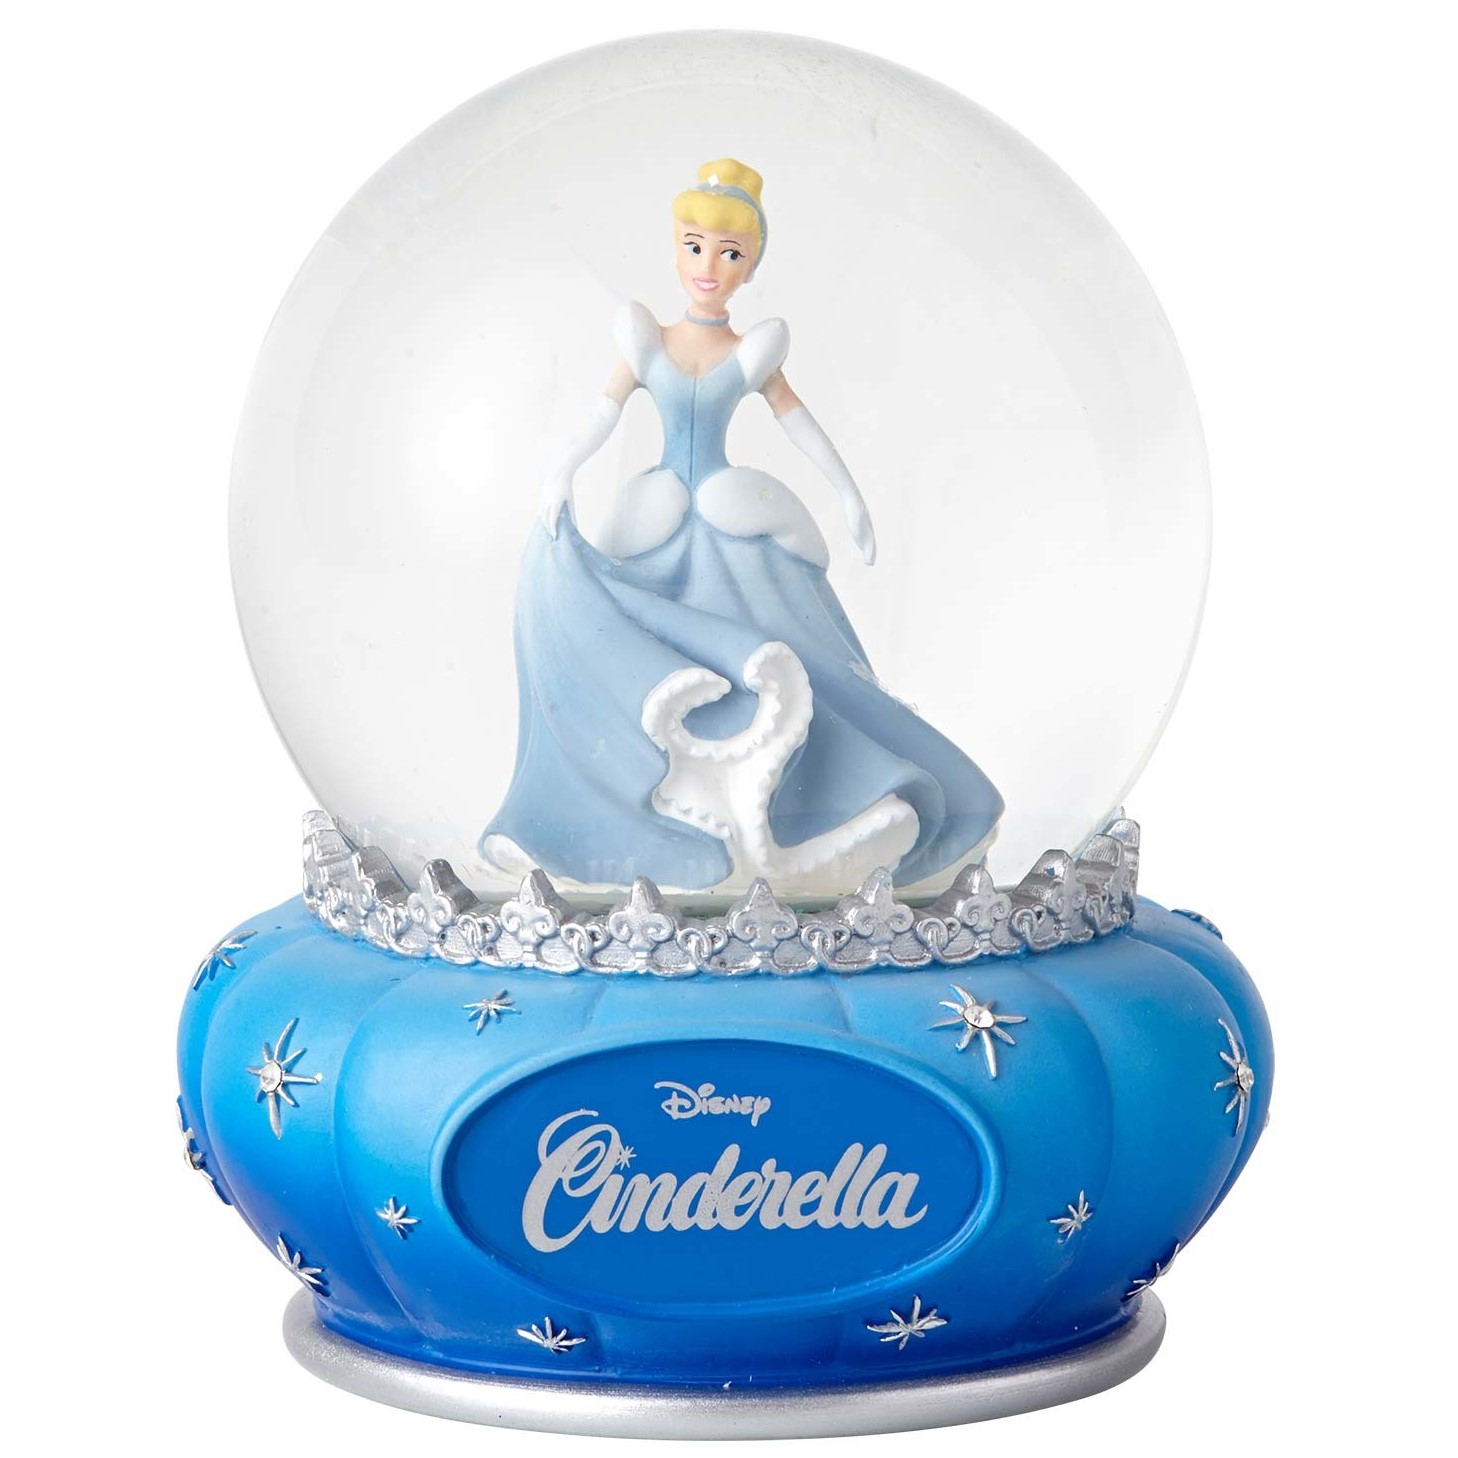 Disney Showcase Cinderella Water Globe